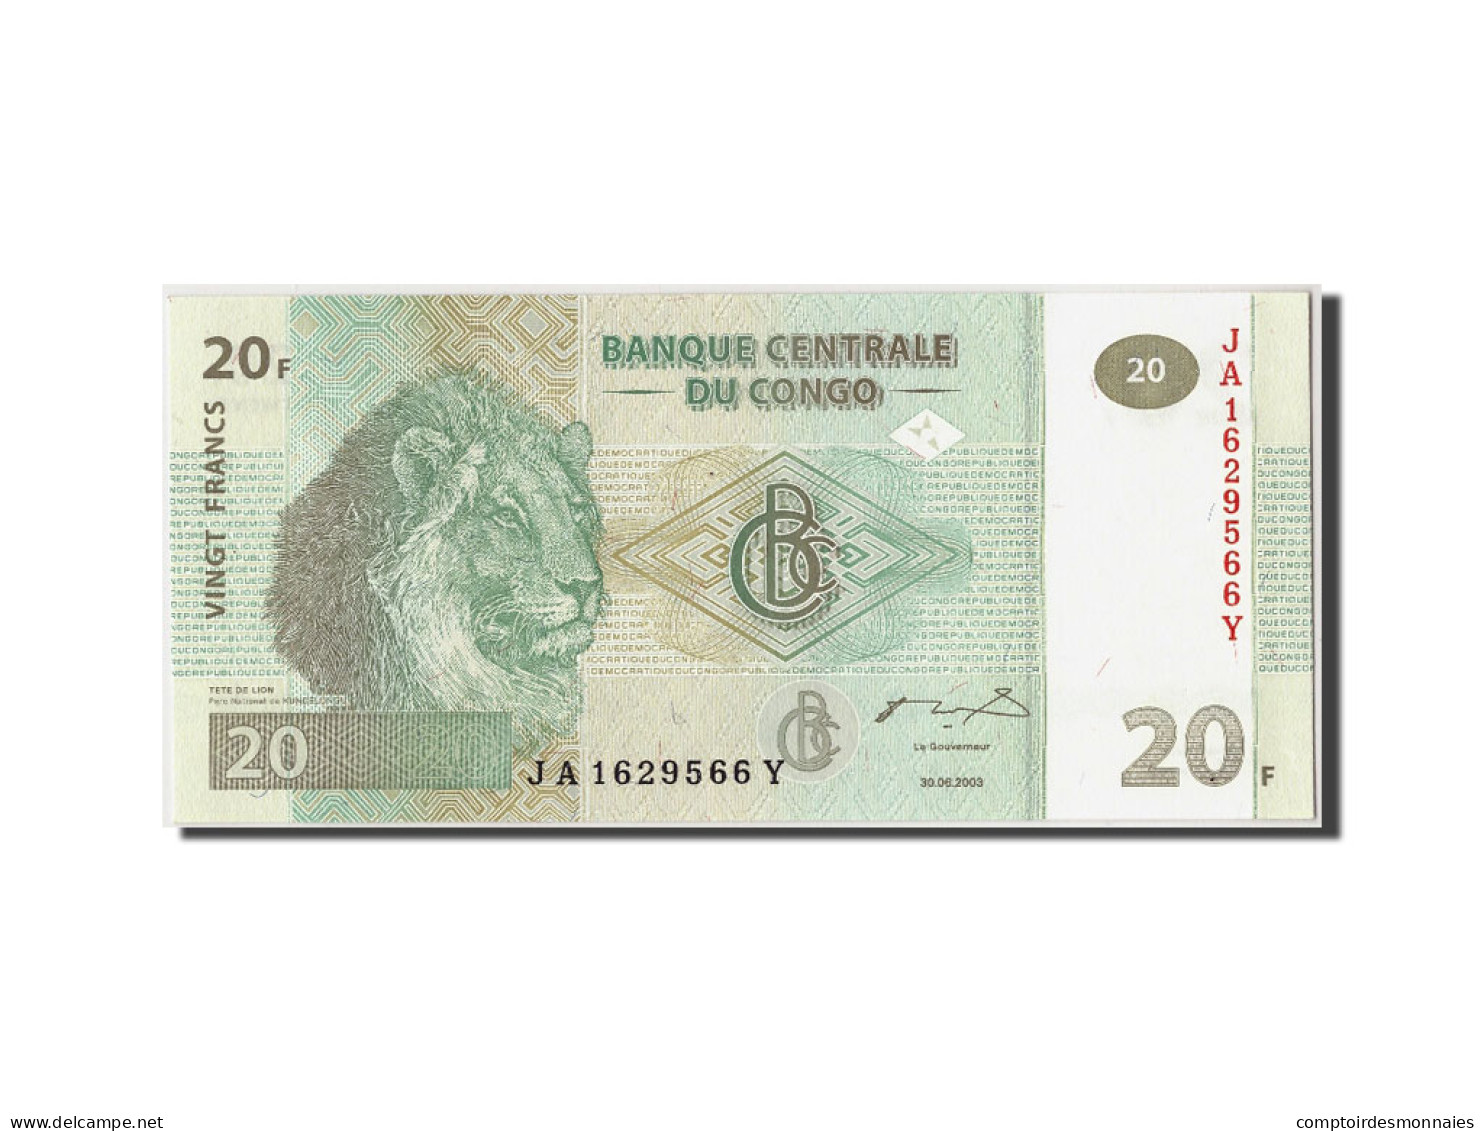 Billet, Congo Democratic Republic, 20 Francs, 2003, 2003-06-30, KM:94a, NEUF - Democratic Republic Of The Congo & Zaire